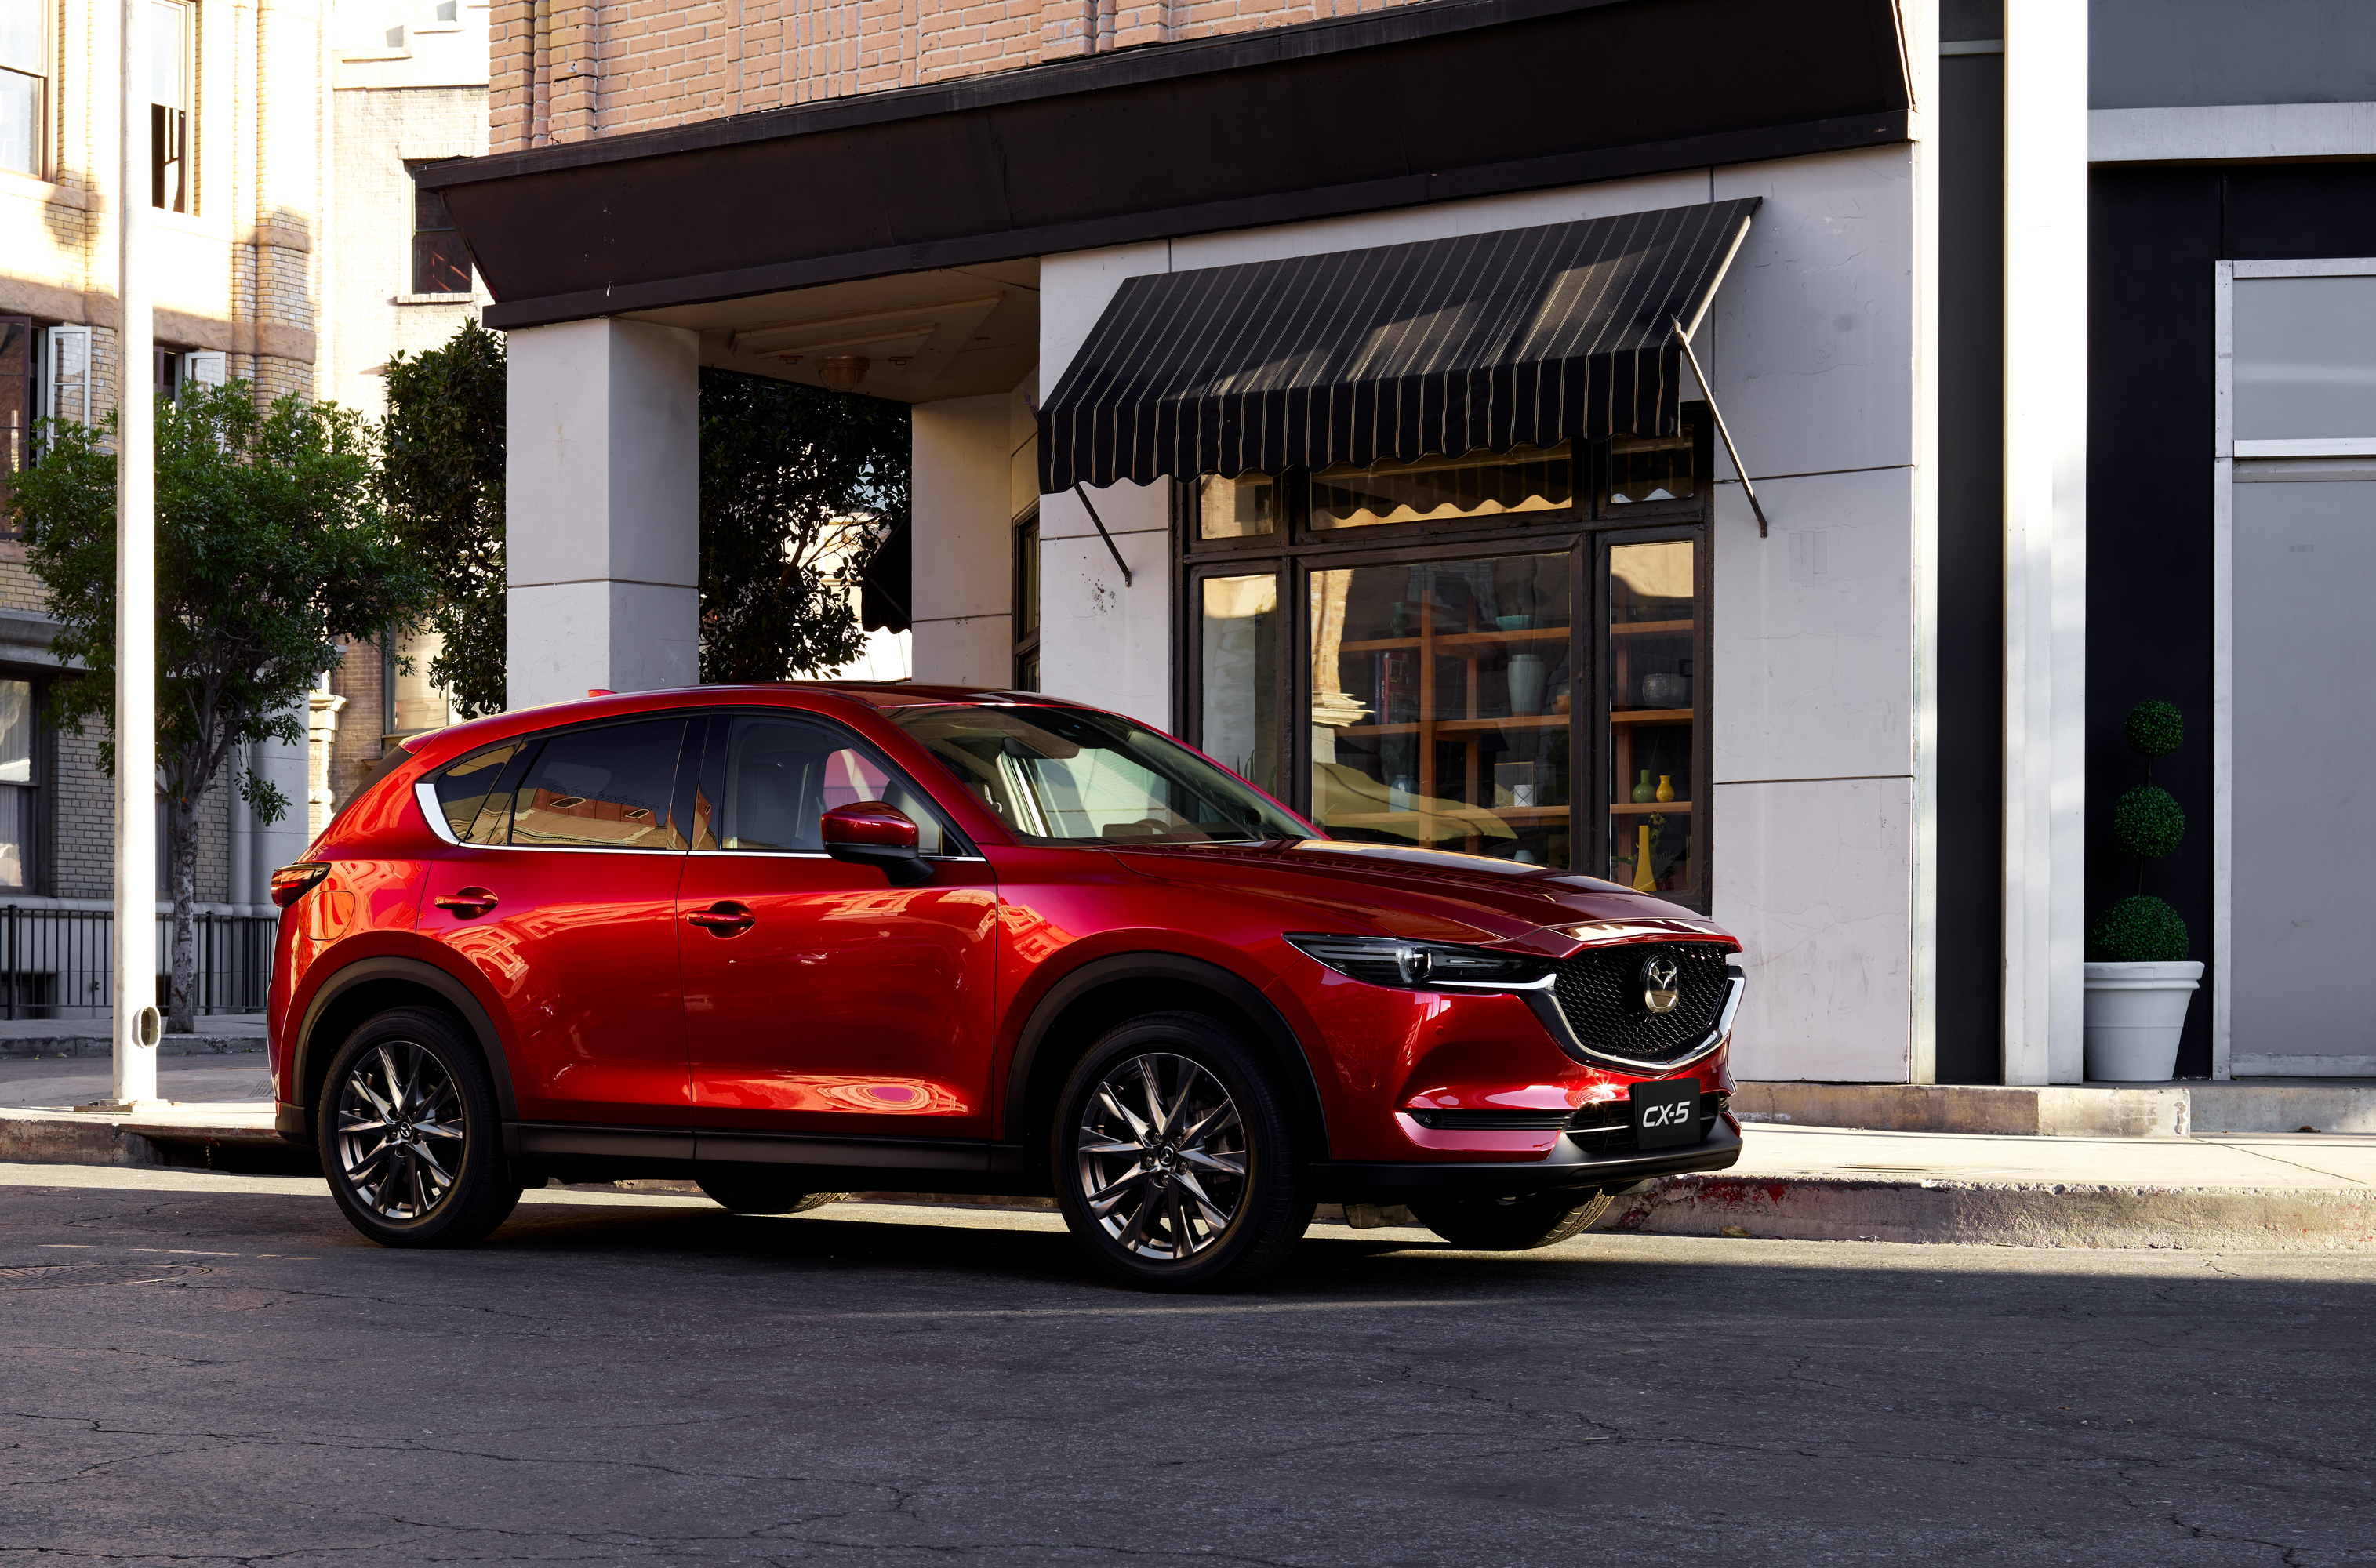 Cùng Mazda đón Tết về nhà với loạt ưu đãi hấp dẫn mazda-cx-5-dan-dau-phan-khuc-trong-nam-2020.jpg